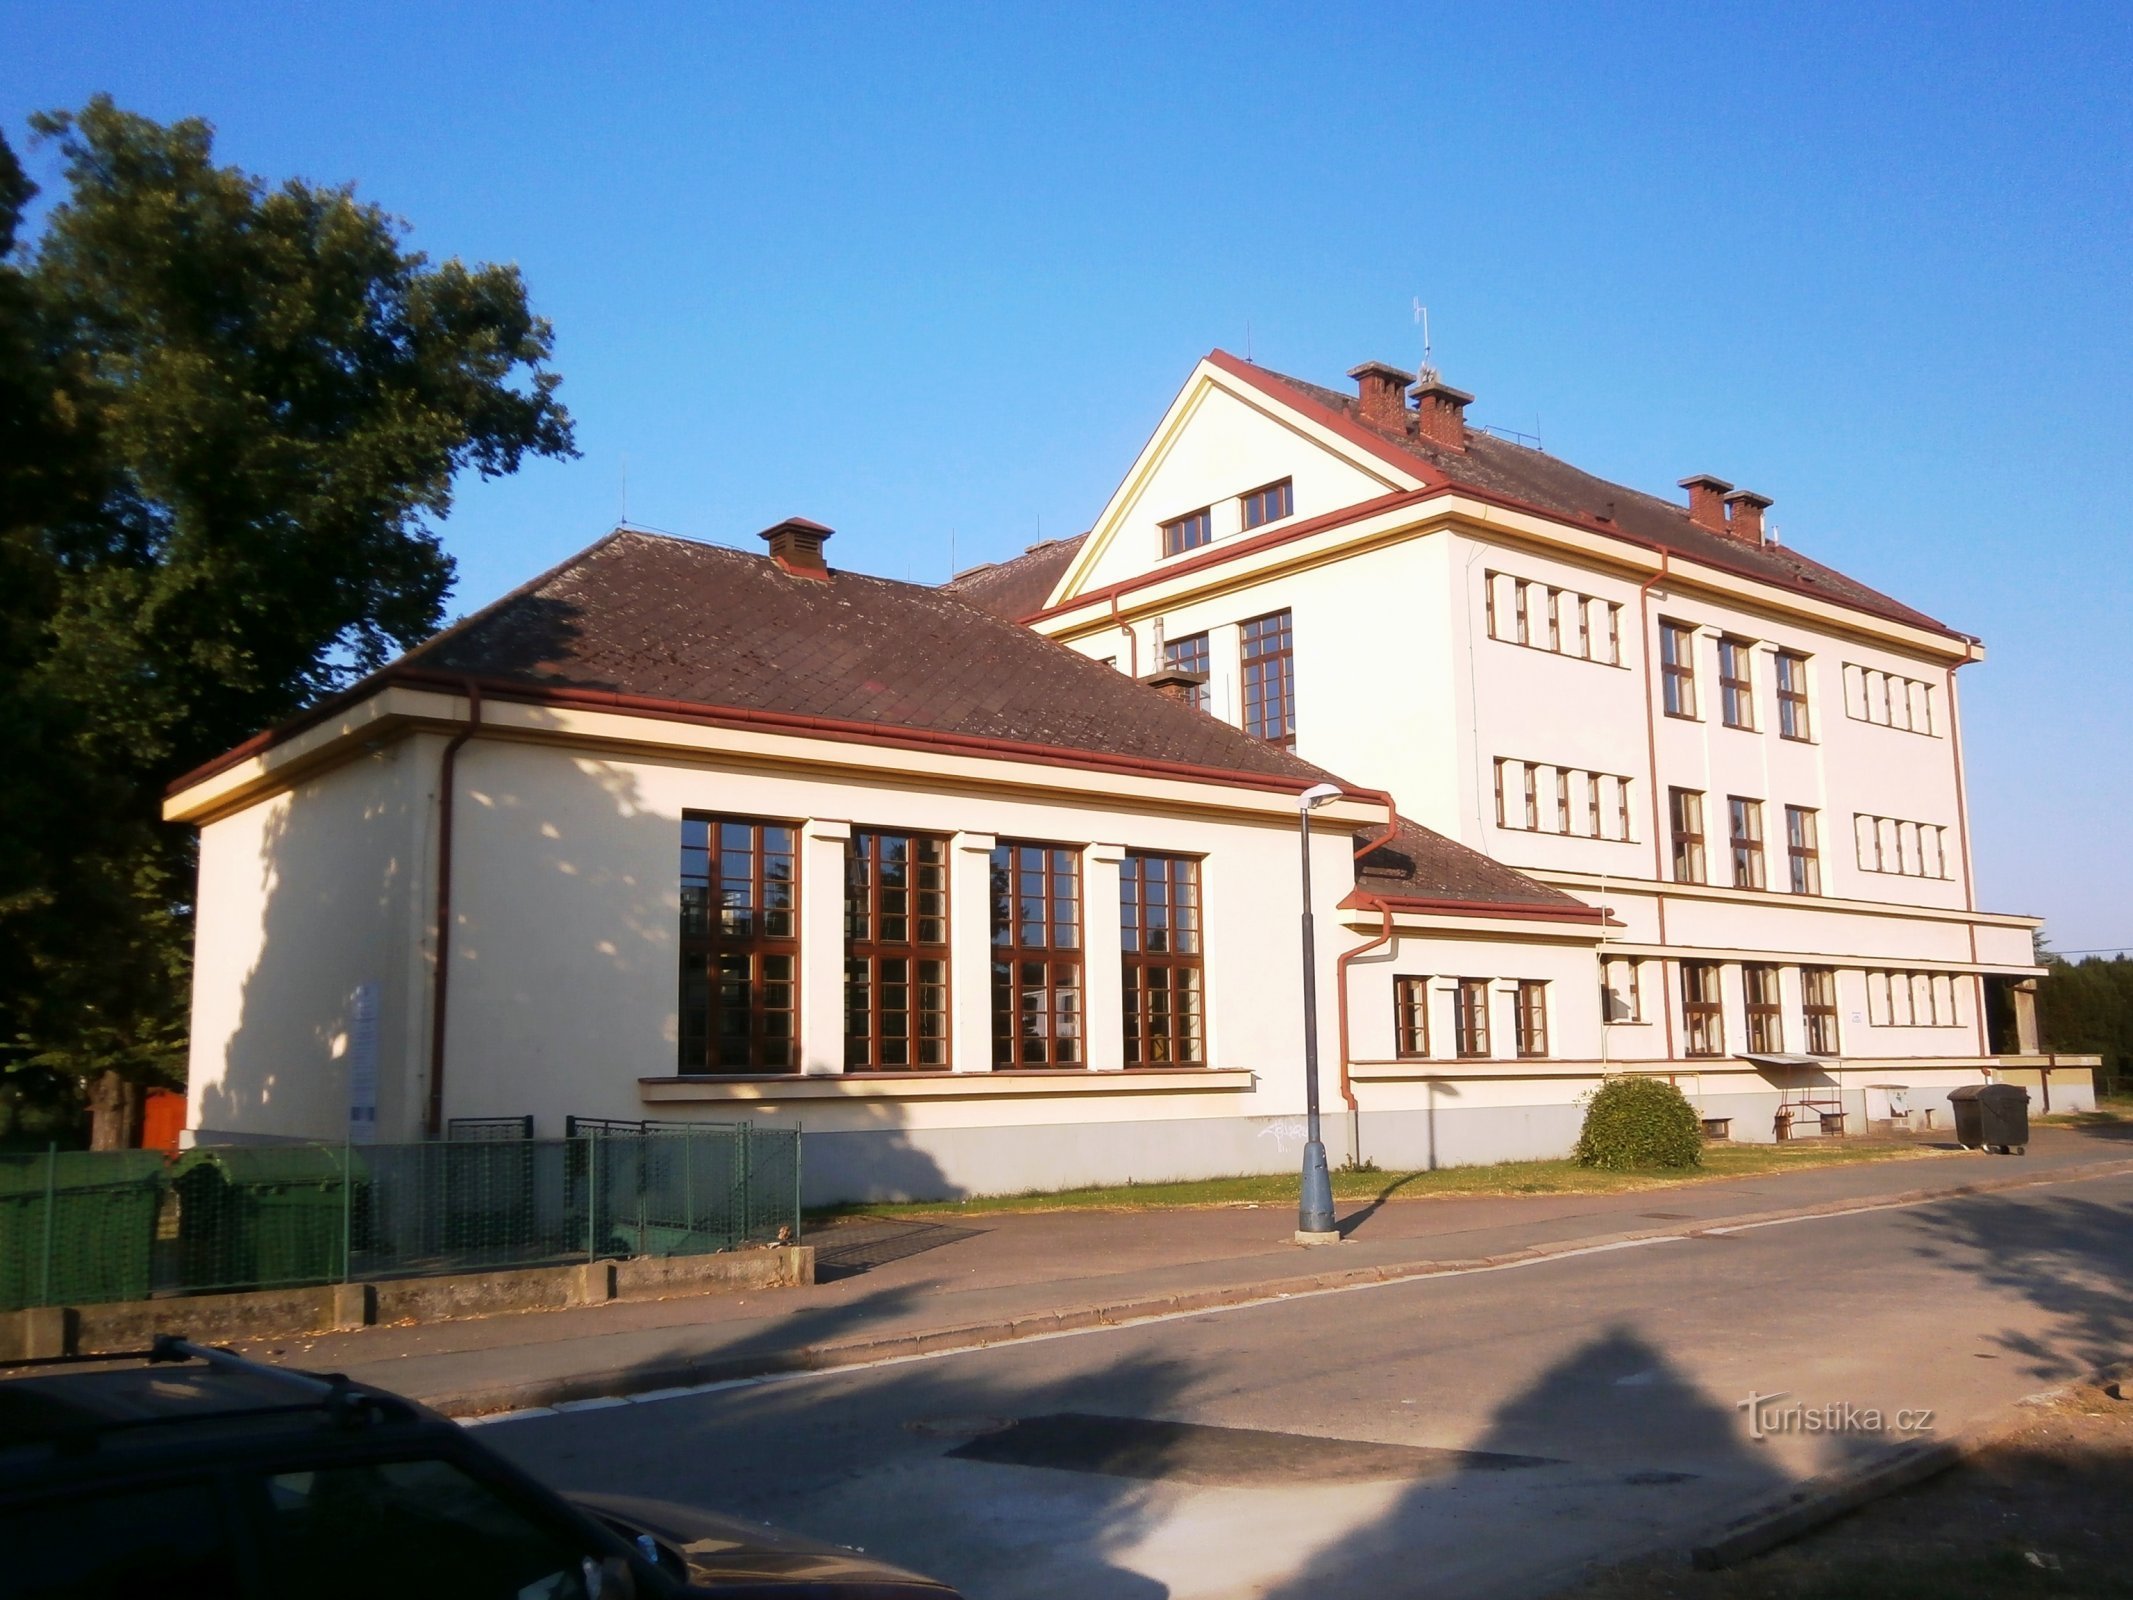 Scuola elementare Masaryk a Plotiště nad Labem (Hradec Králové, 28.7.2013/XNUMX/XNUMX)